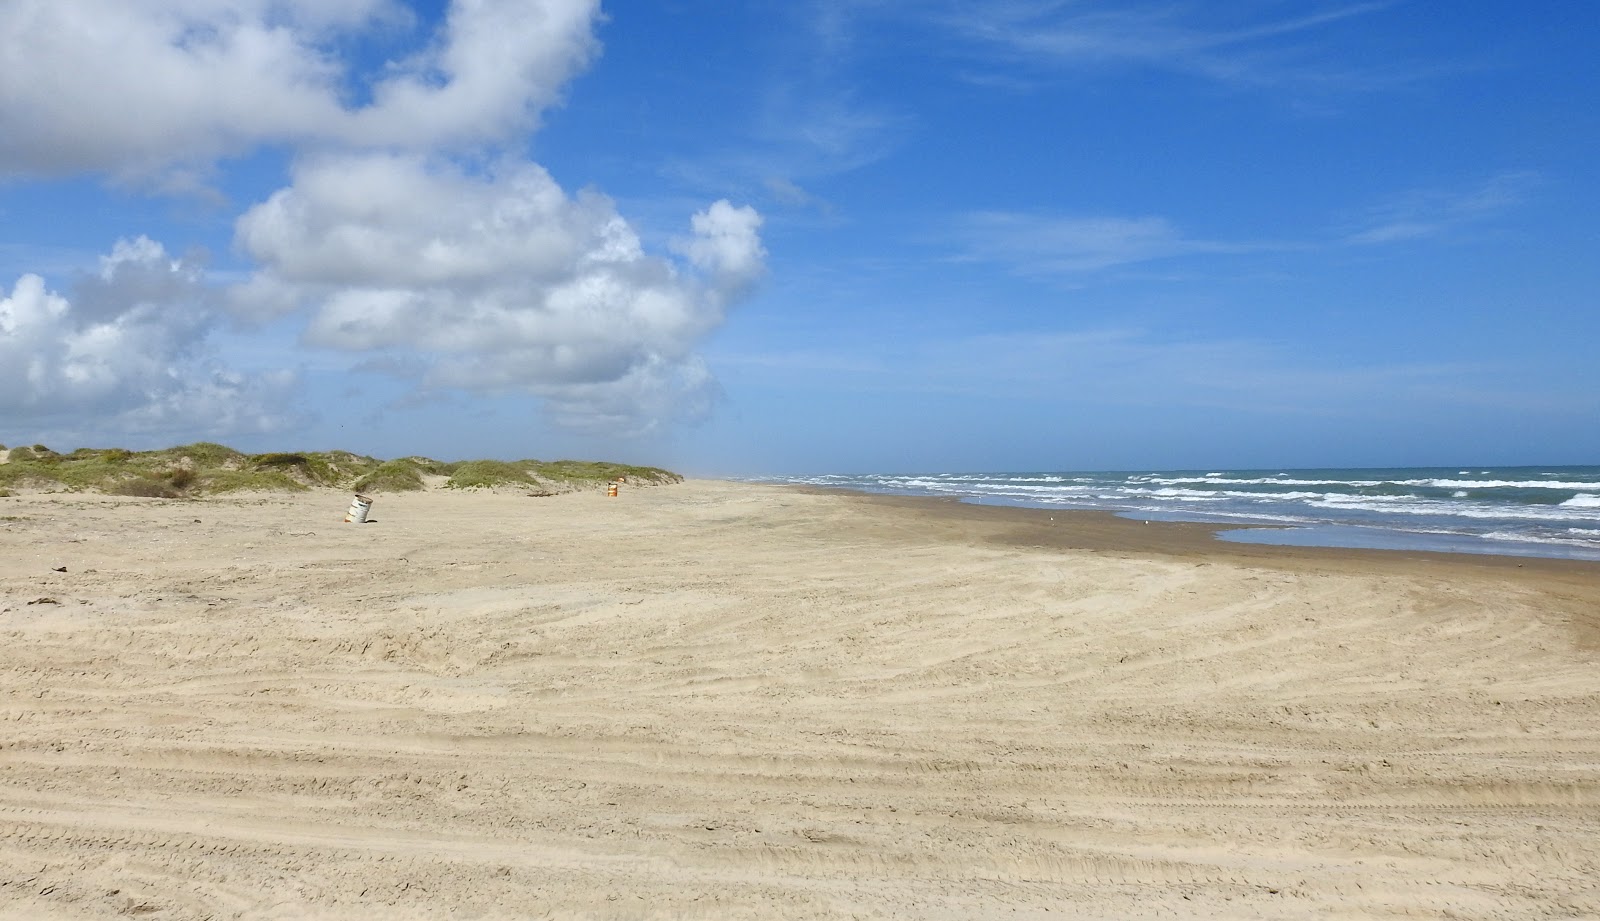 Fotografie cu Boca Chica beach cu o suprafață de nisip gri